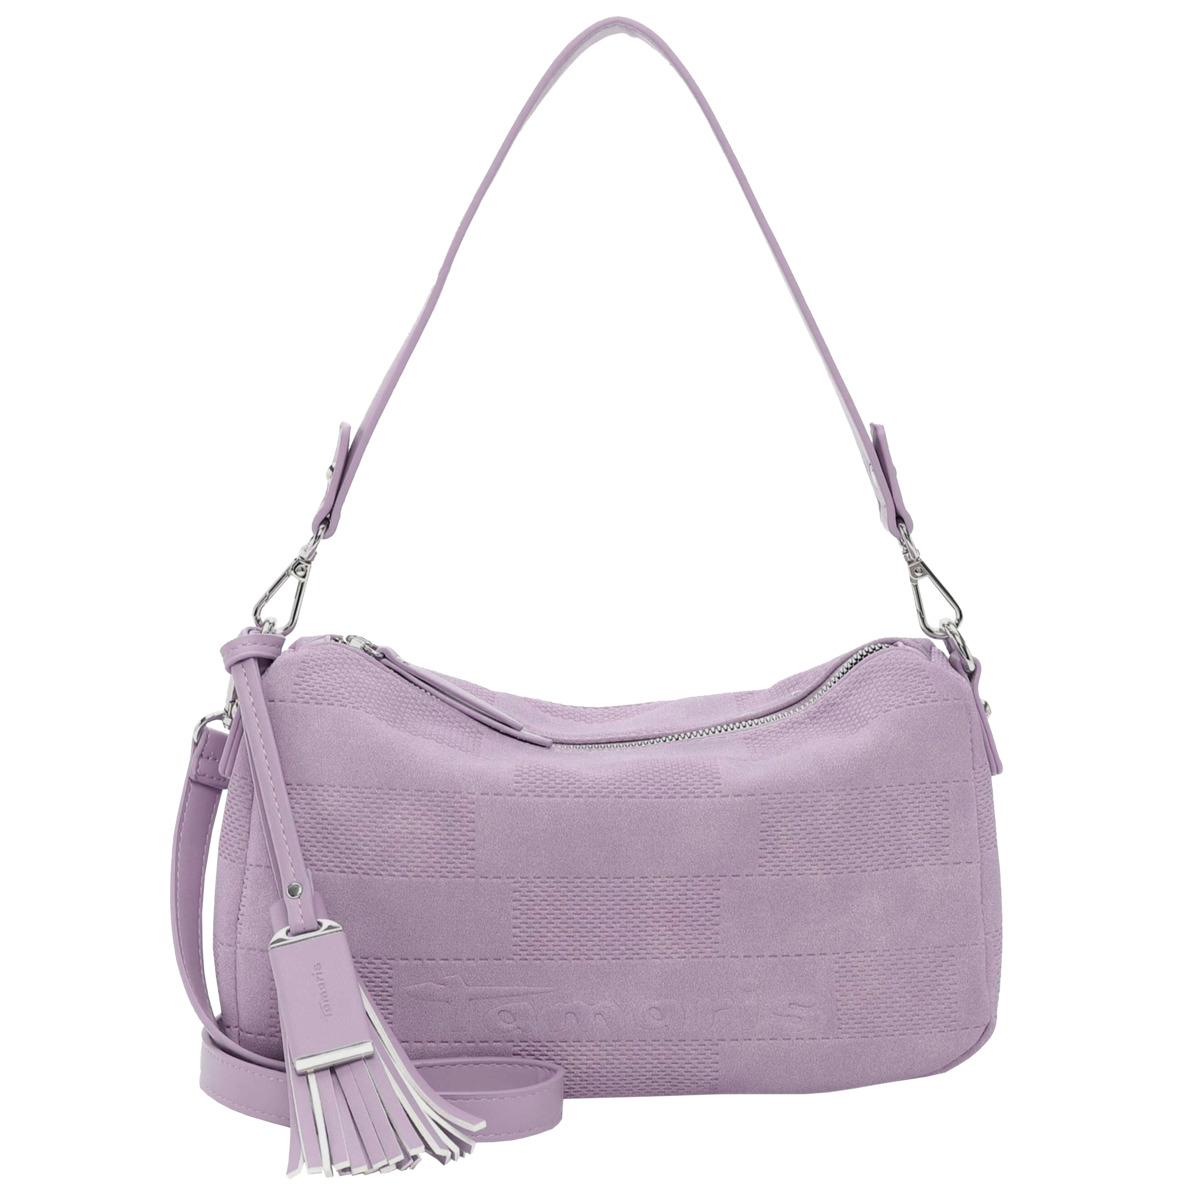 сумка tamaris фиолетовый Сумка Tamaris Handtasche Letzia, фиолетовый